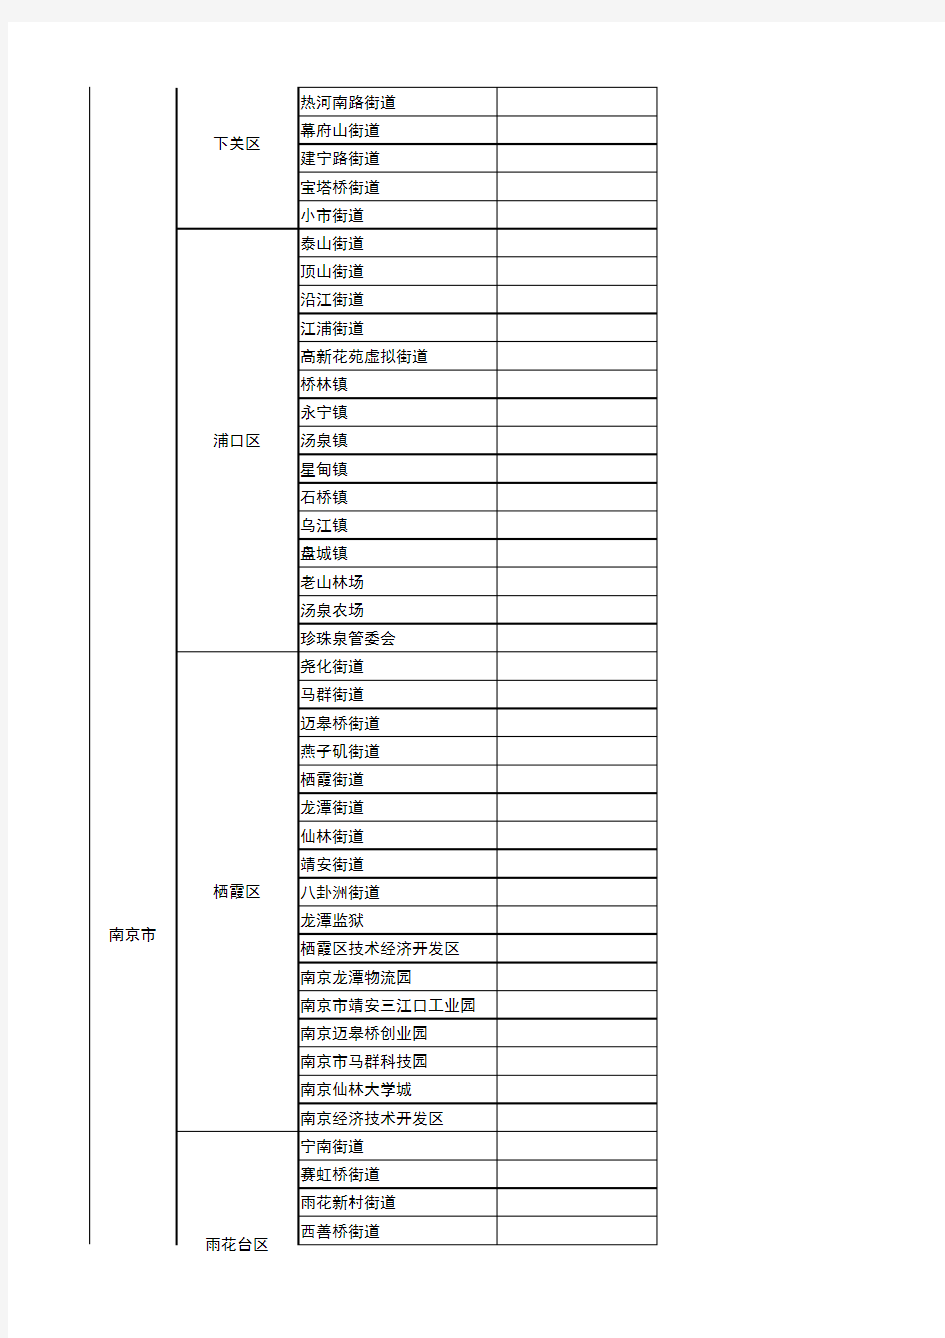 江苏省行政区域划分图(2014,从省到乡镇,超值)